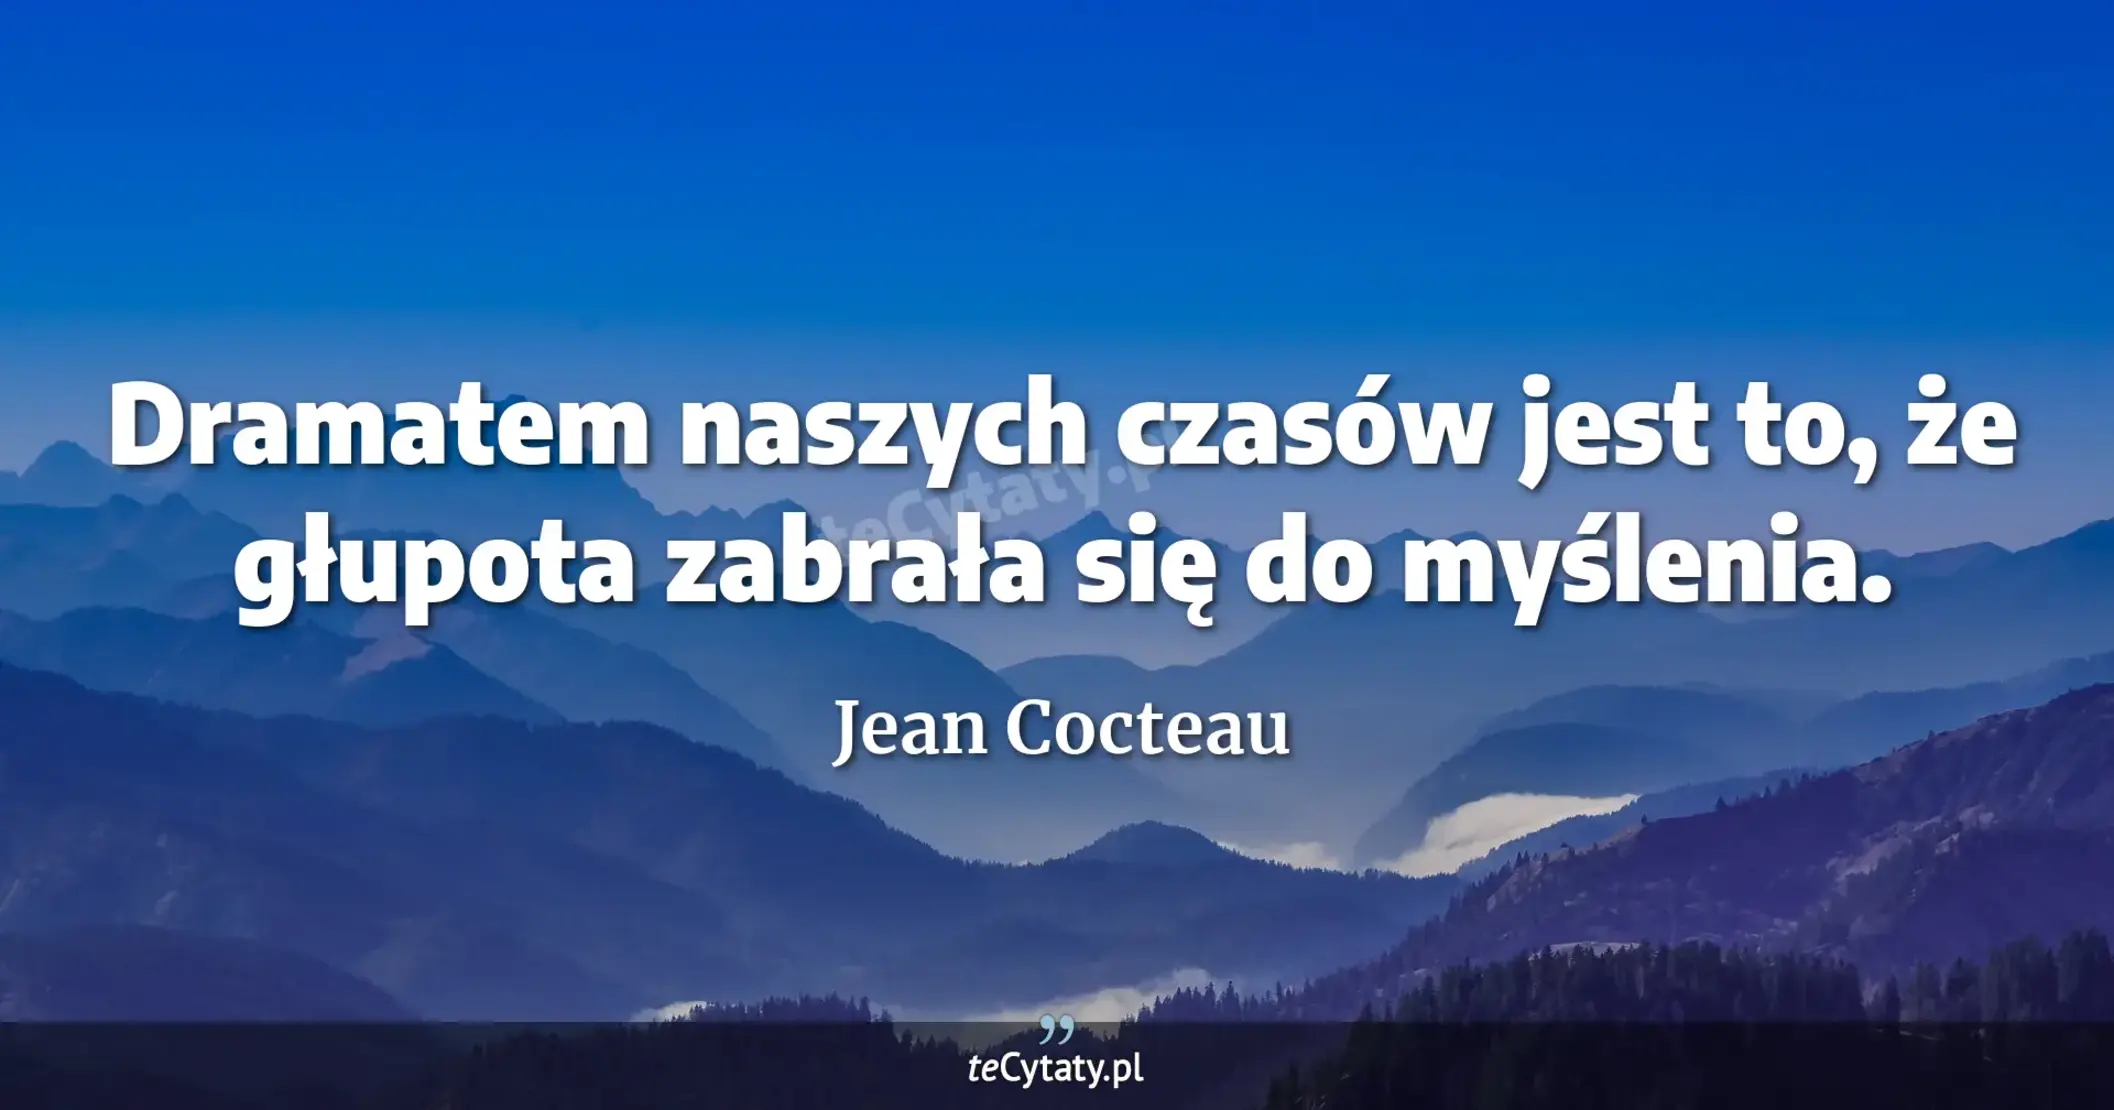 Dramatem naszych czasów jest to, że głupota zabrała się do myślenia. - Jean Cocteau